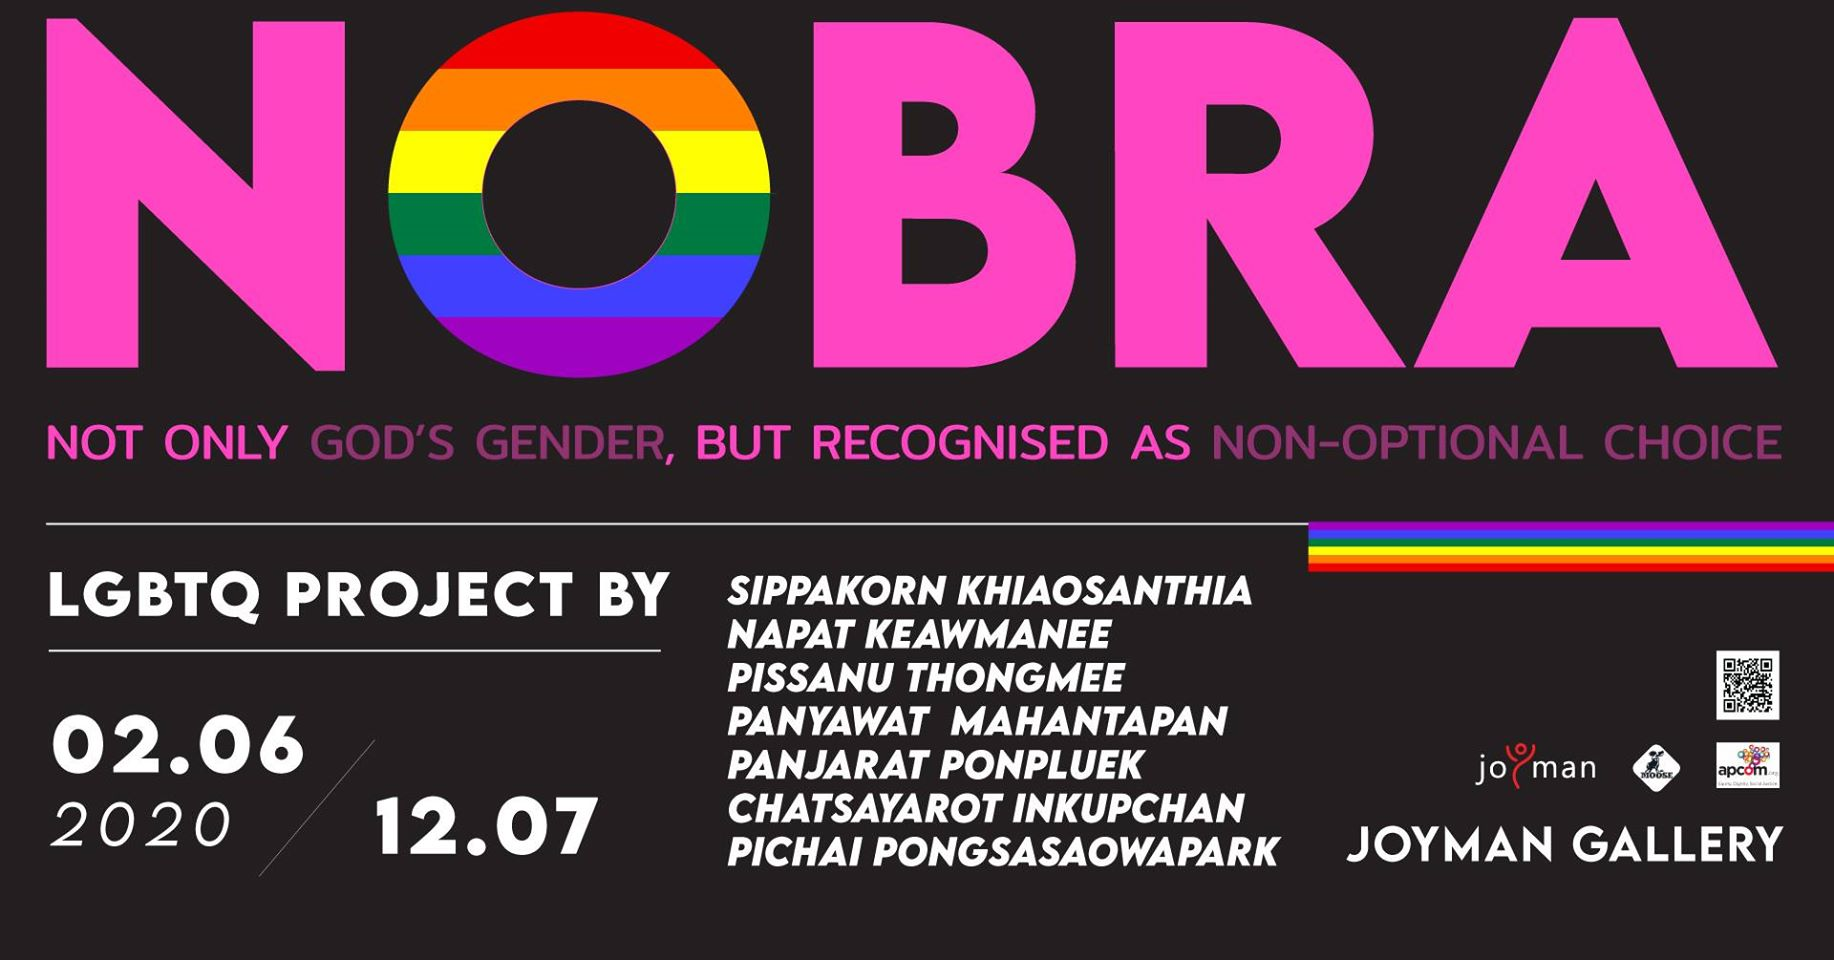 NOBRA LGBTQ Project